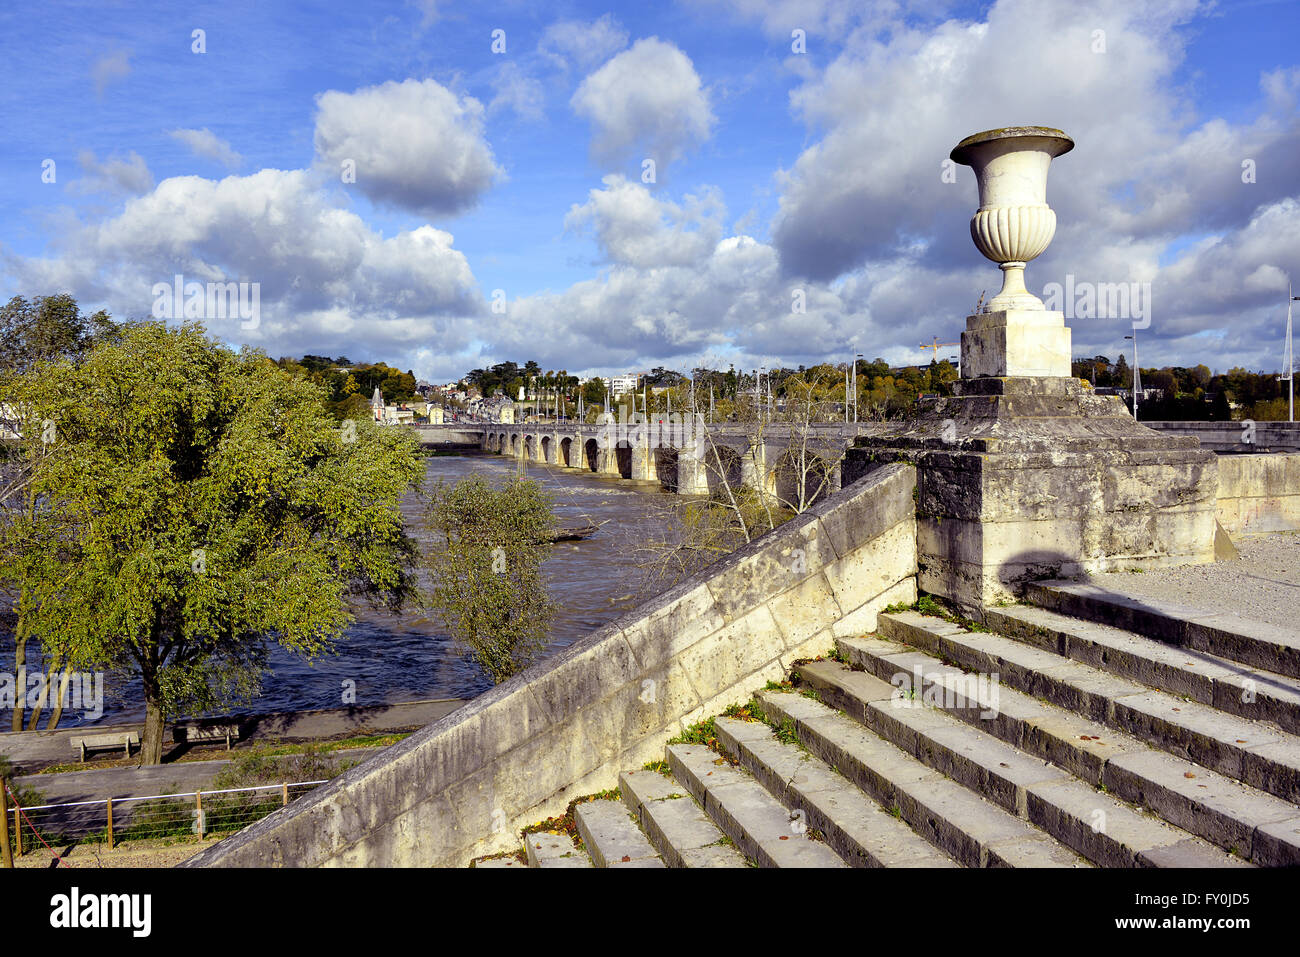 Treppe im Loire-Ufer bei Touren, Stadt in Zentralfrankreich, die Hauptstadt des Département Indre-et-Loire, Region Centre. Stockfoto